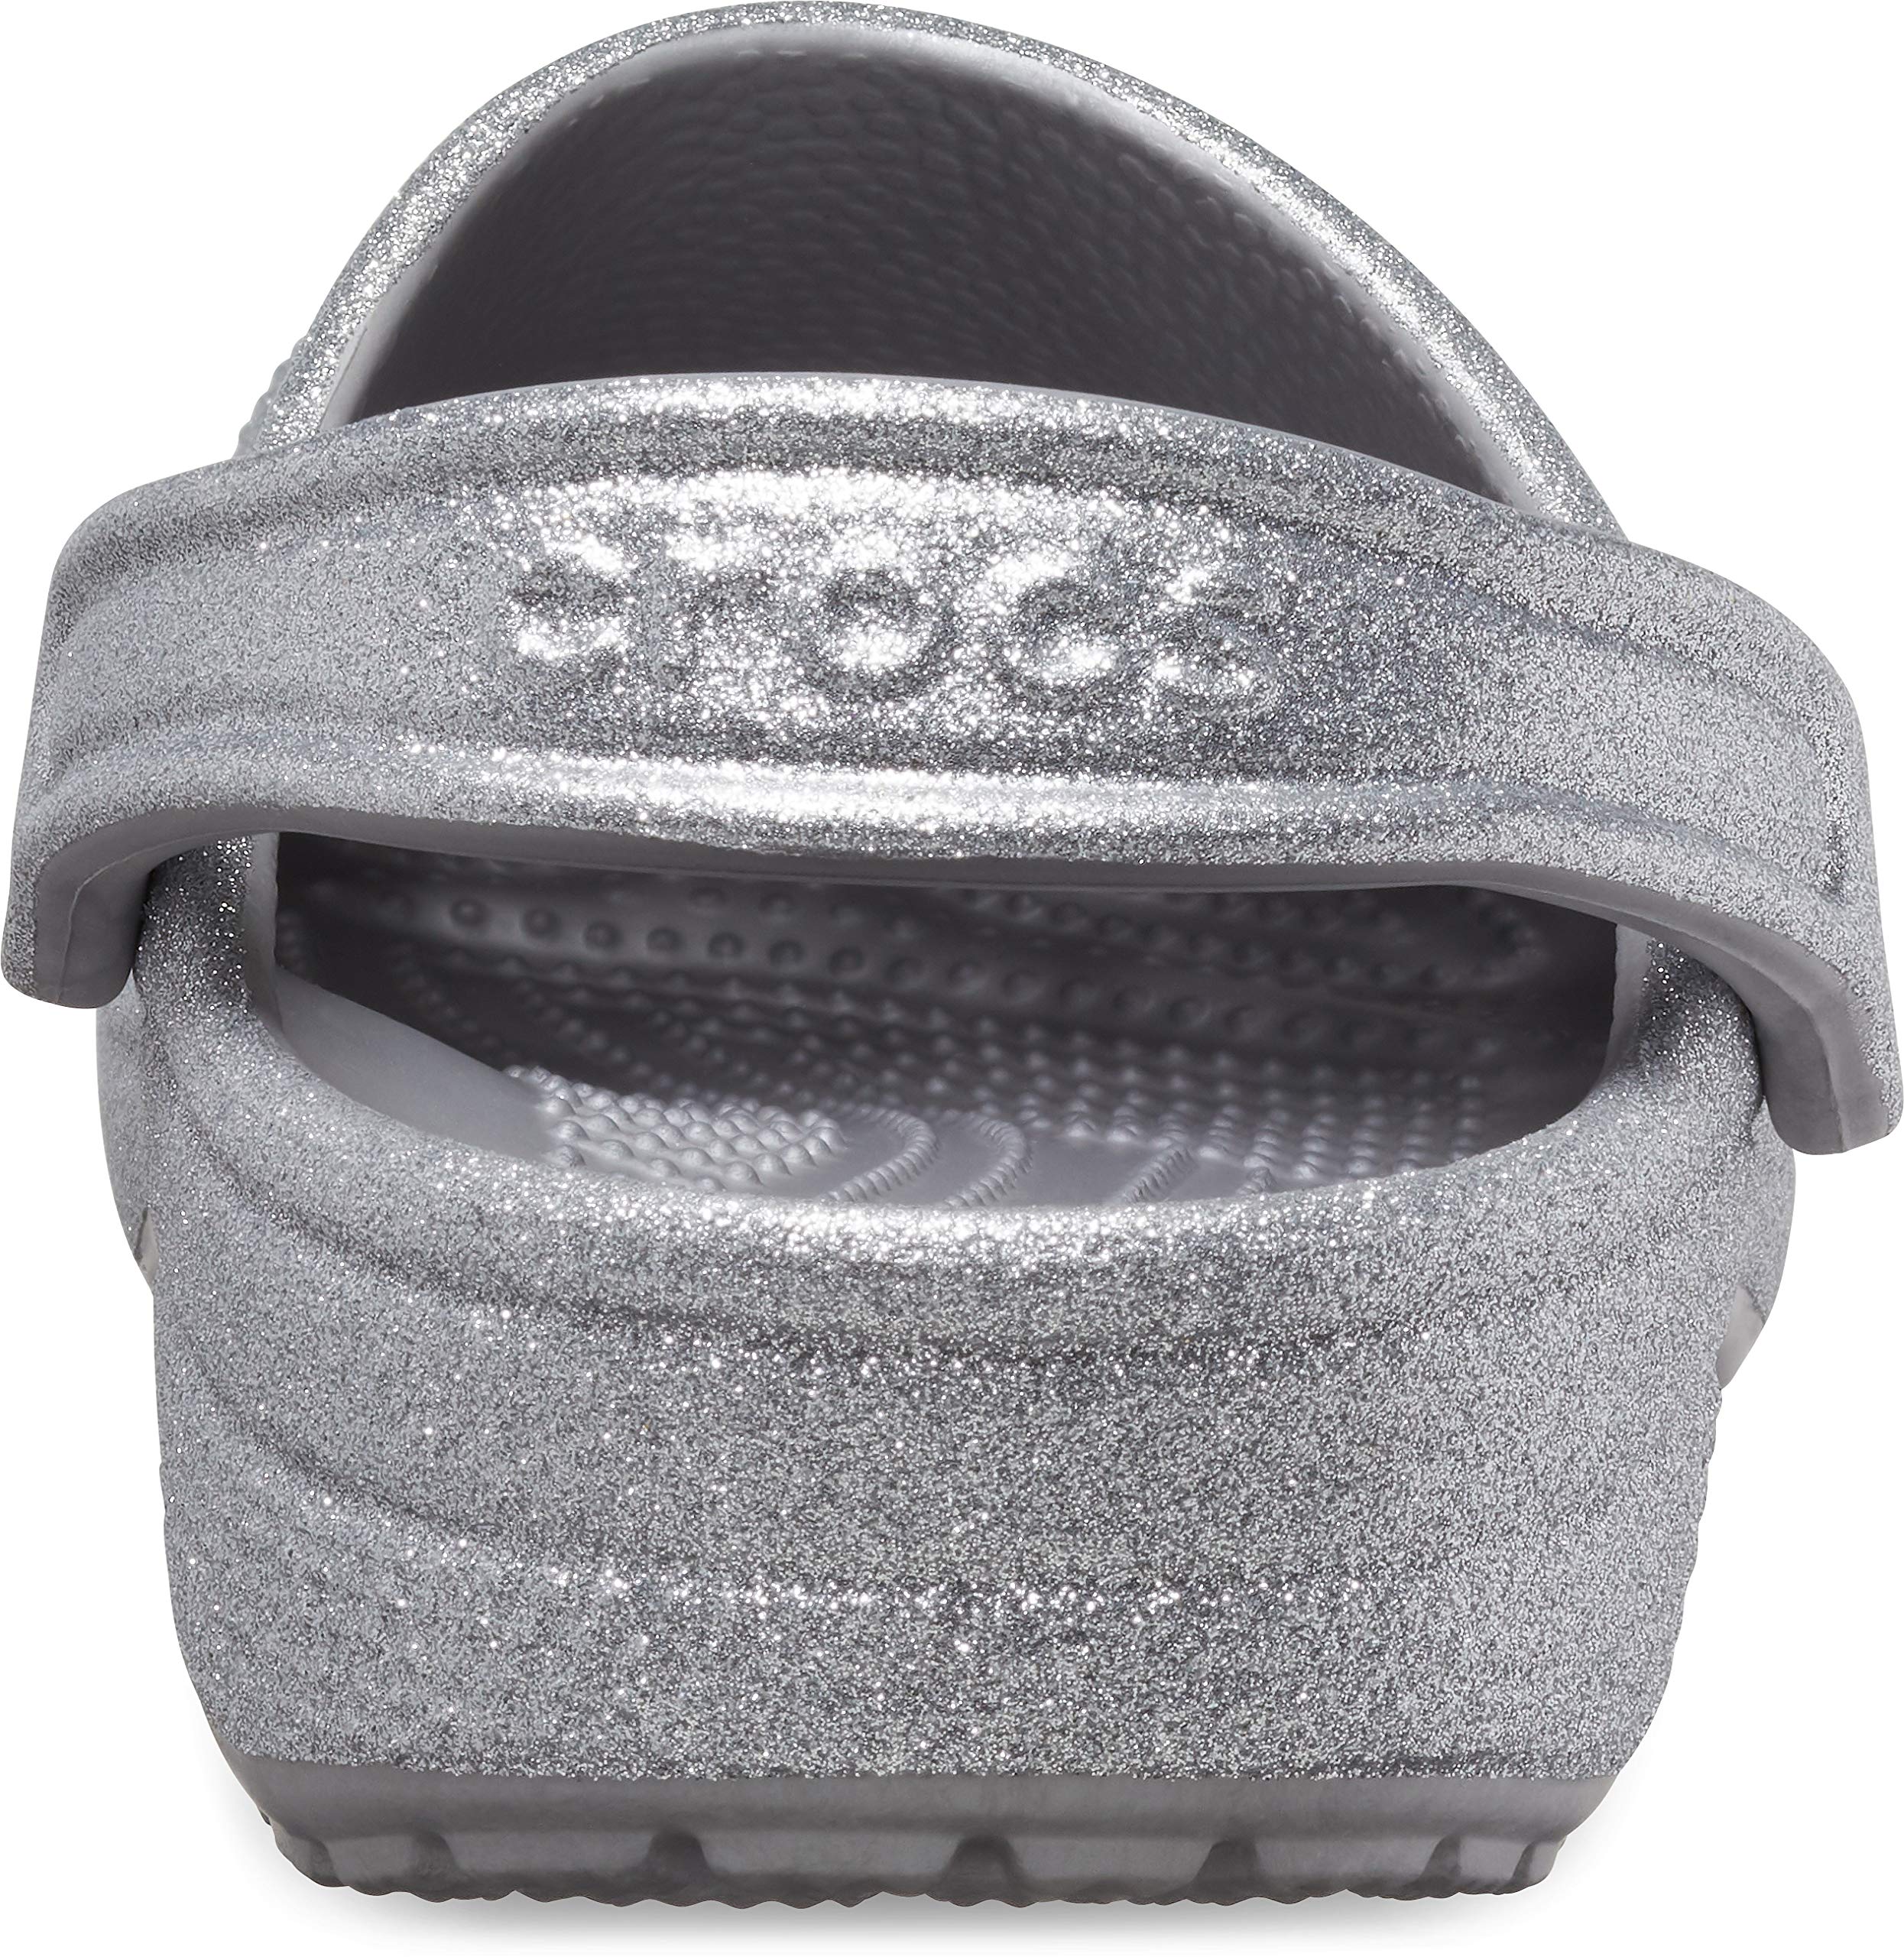 Crocs Unisex-Child Classic Glitter Clog (Little Big Kid)